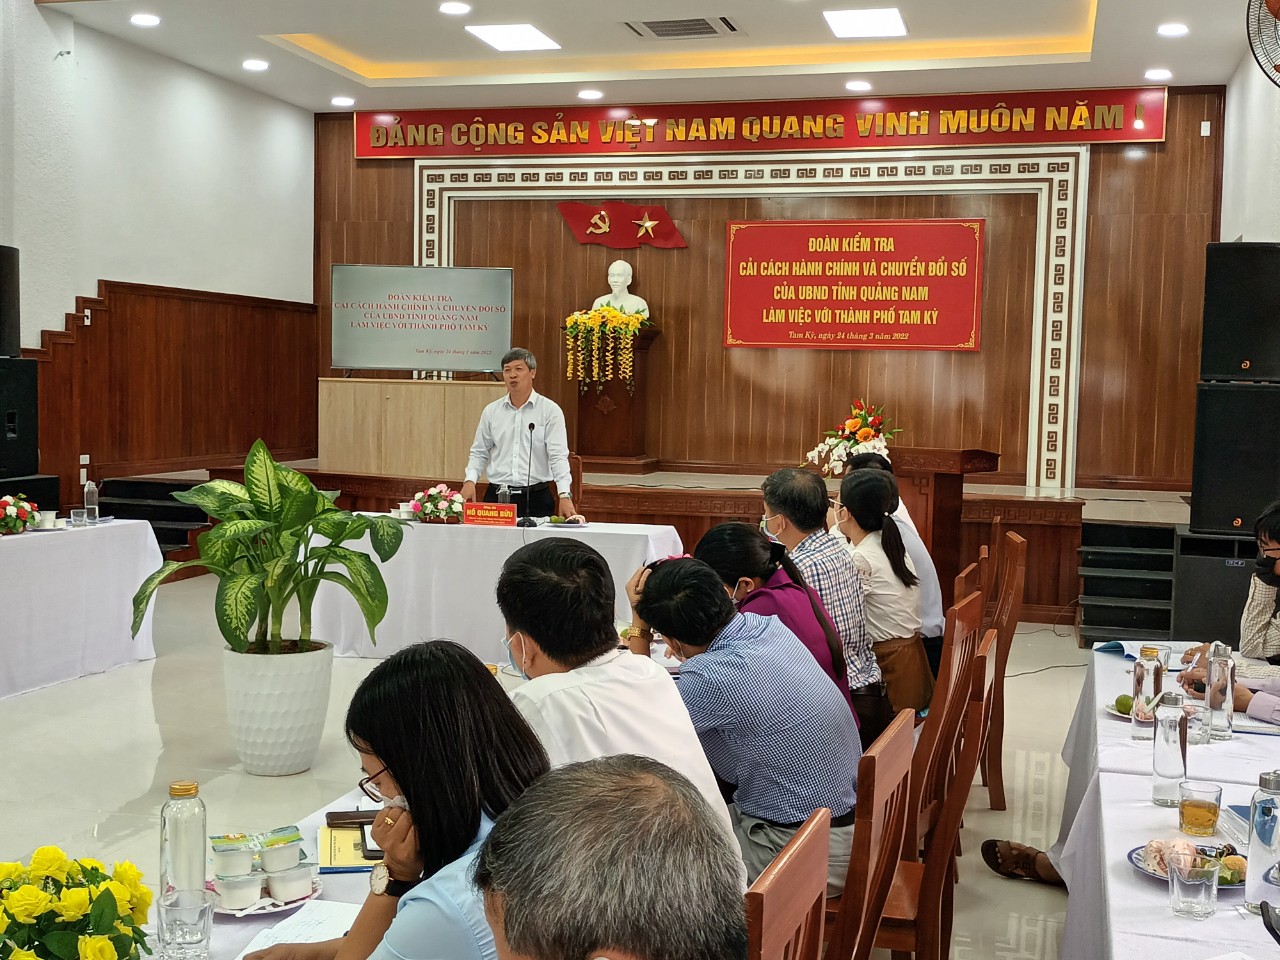 Đồng chí Hồ Quang Bửu - Phó chủ tịch UBND tỉnh phát biểu tại buổi làm việc